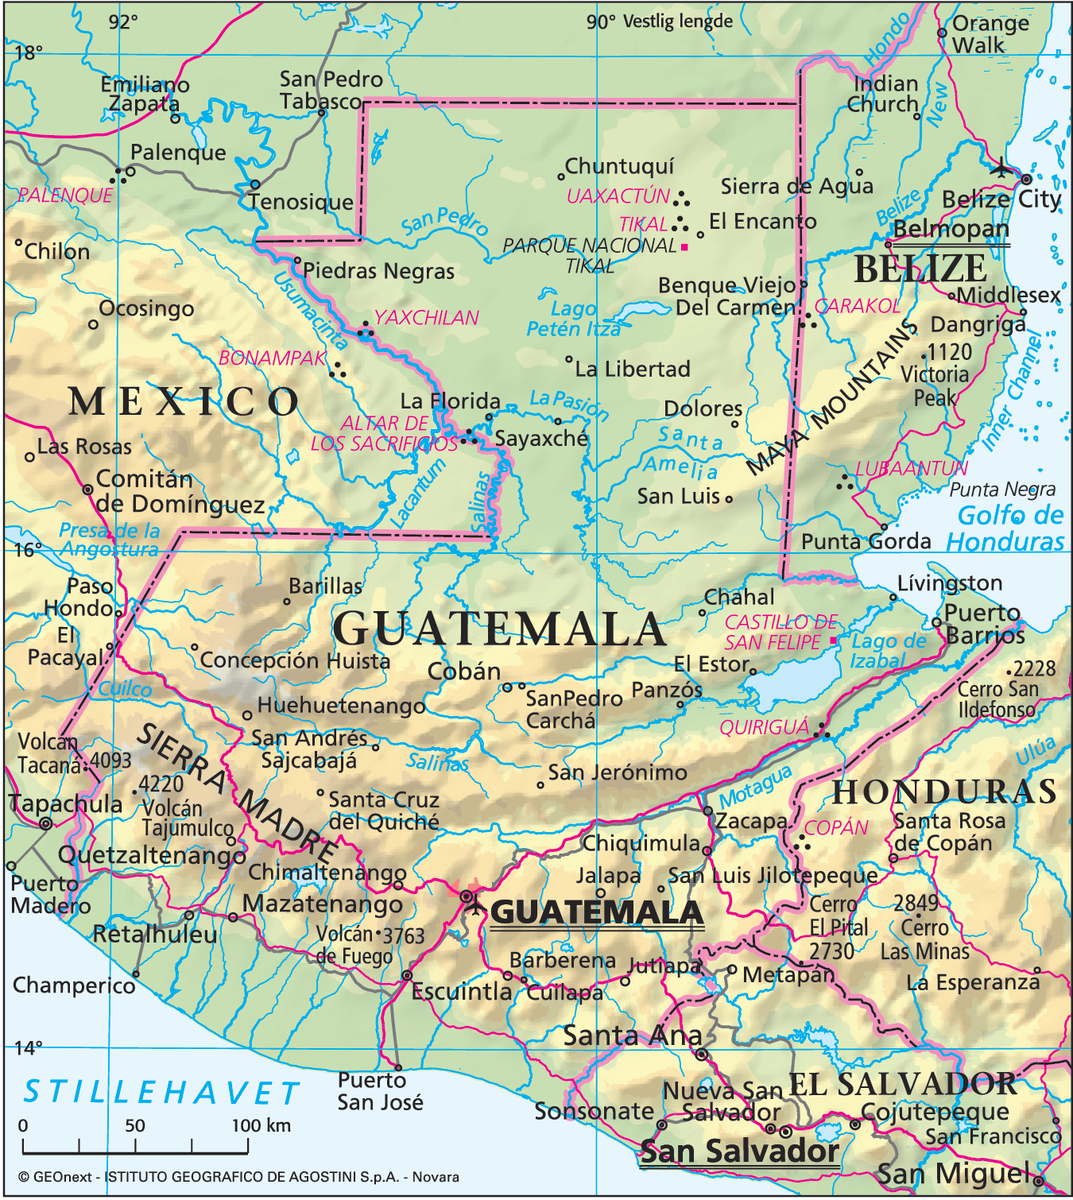 Guatemala (Hovedkart)